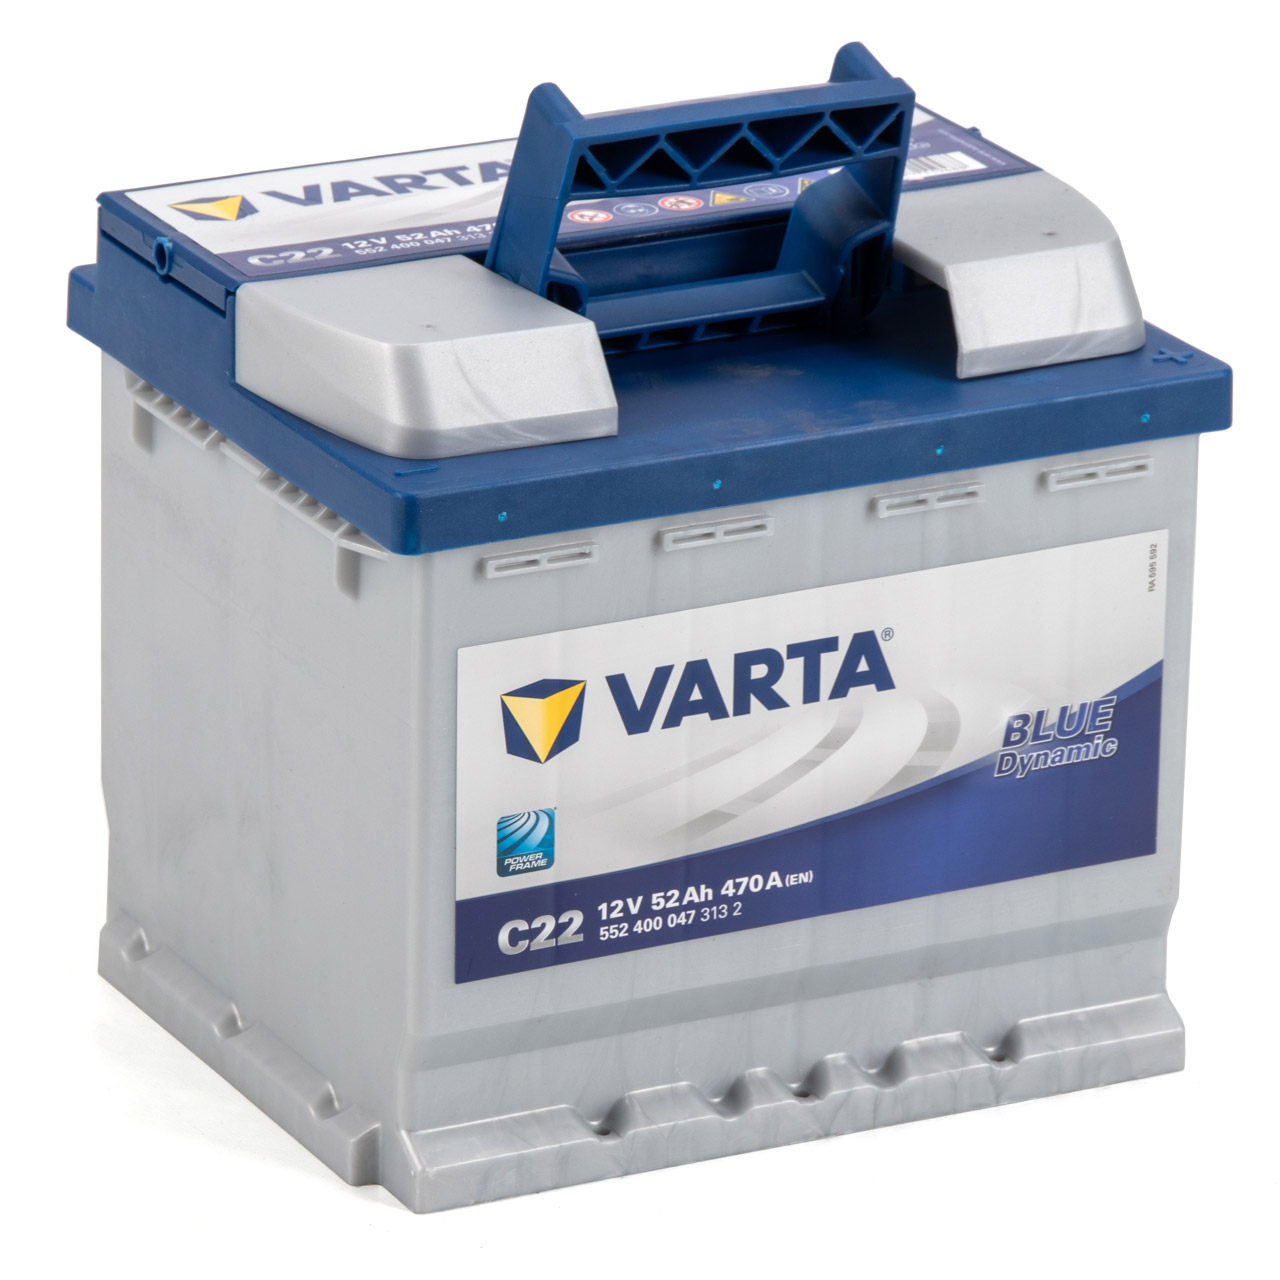 VARTA Starterbatterien / Autobatterien - 5524000473132 - ws